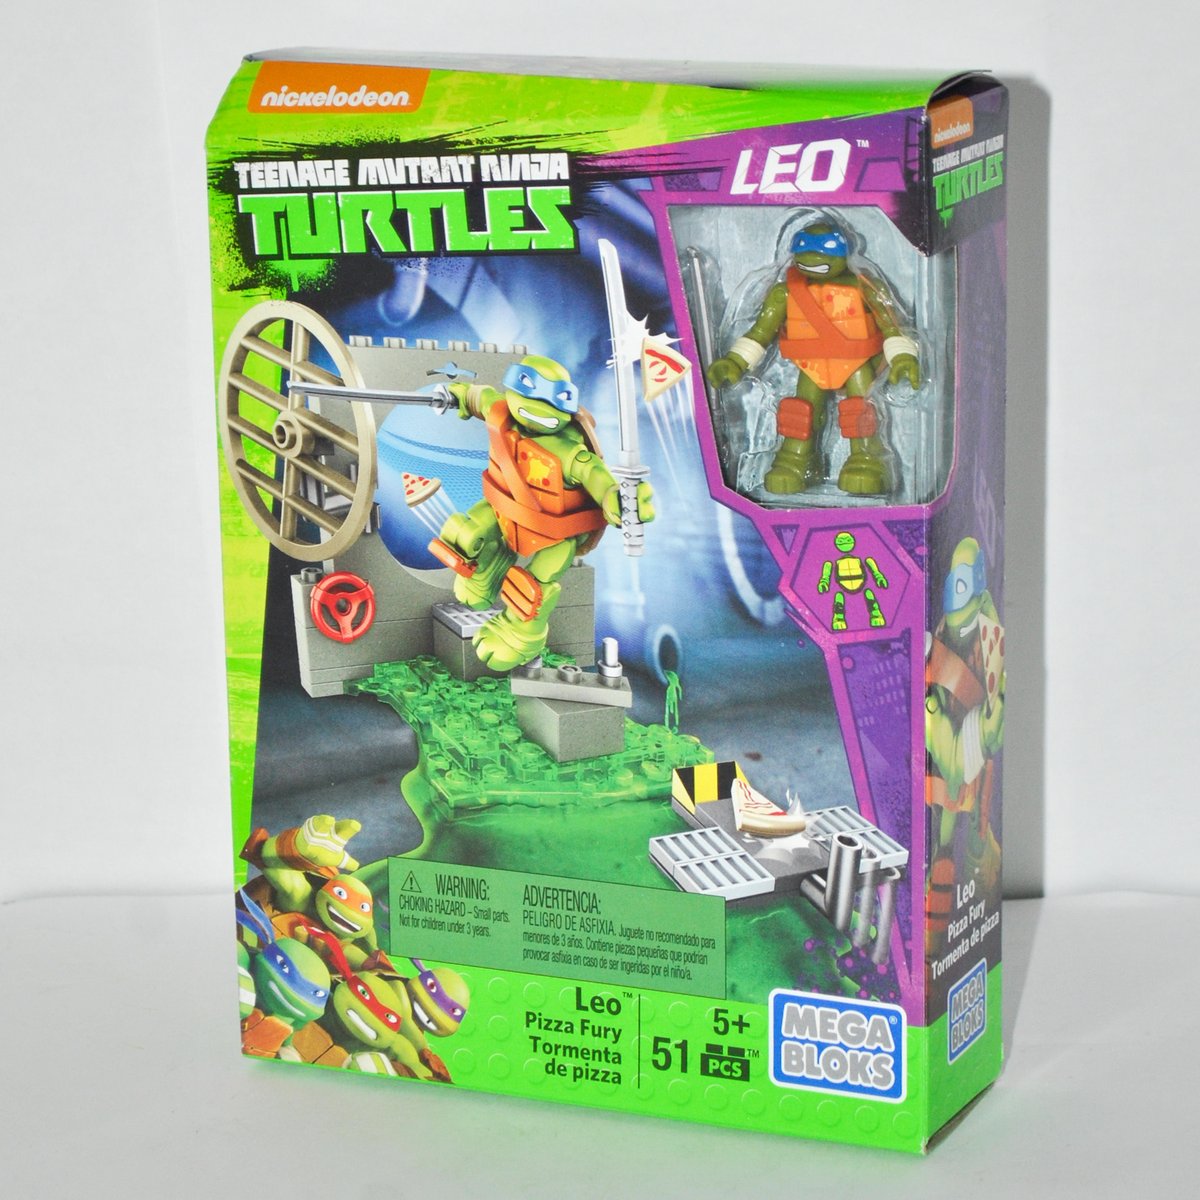 Mega Bloks  Teenage Mutant Ninja Turtles   LEO   Pizza Fury   DMX34 